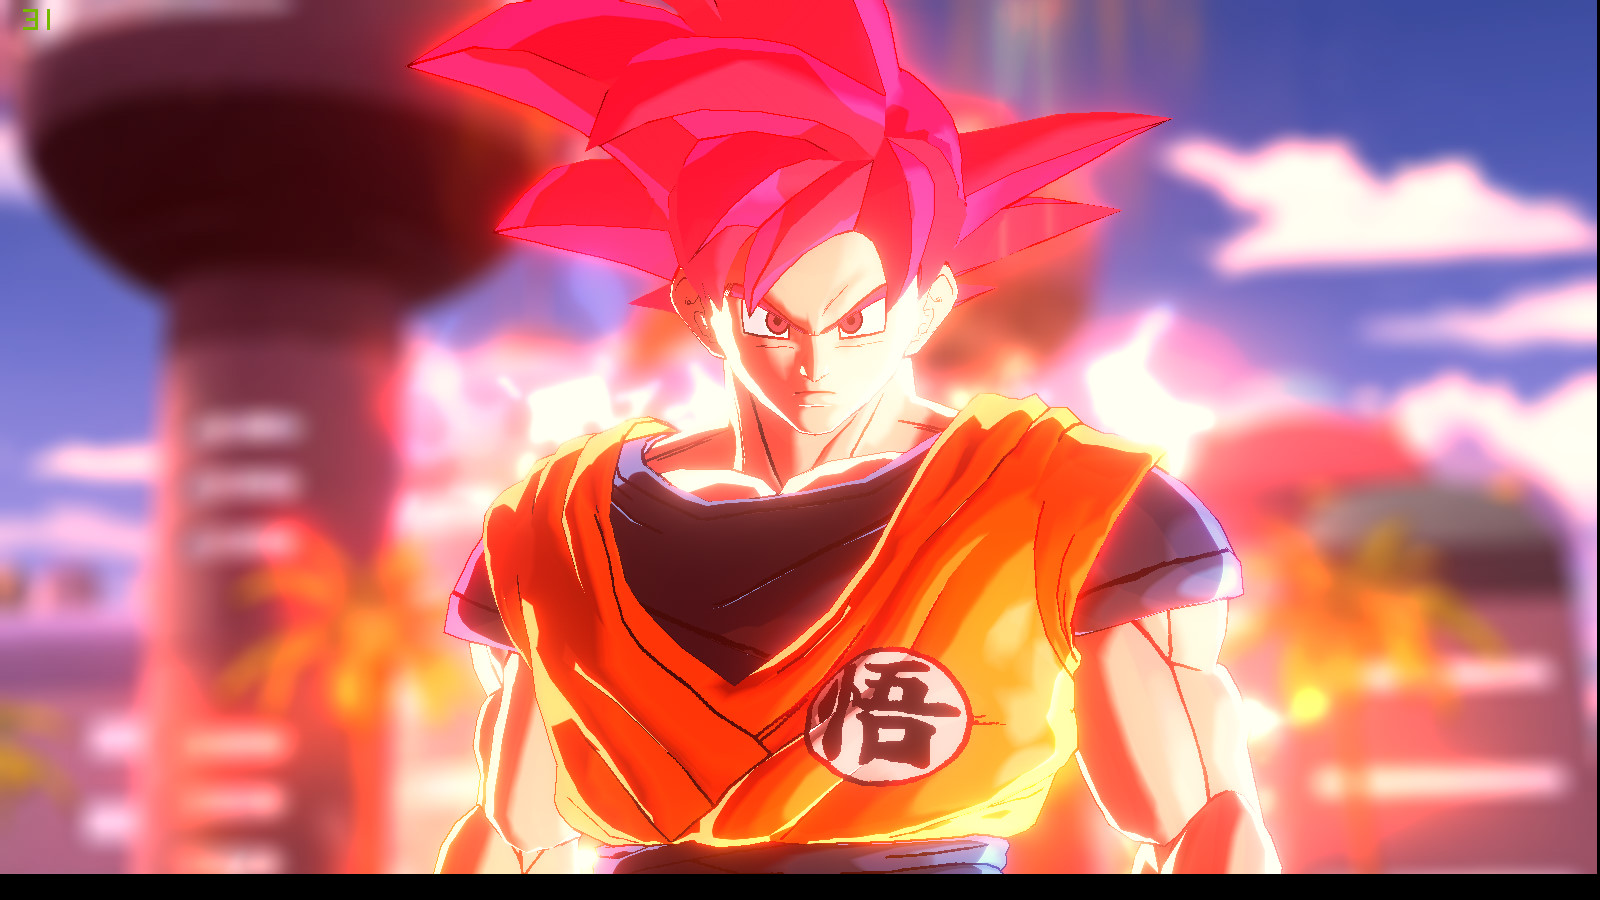 SSJGod Goku (transforming to 200%power Goku)